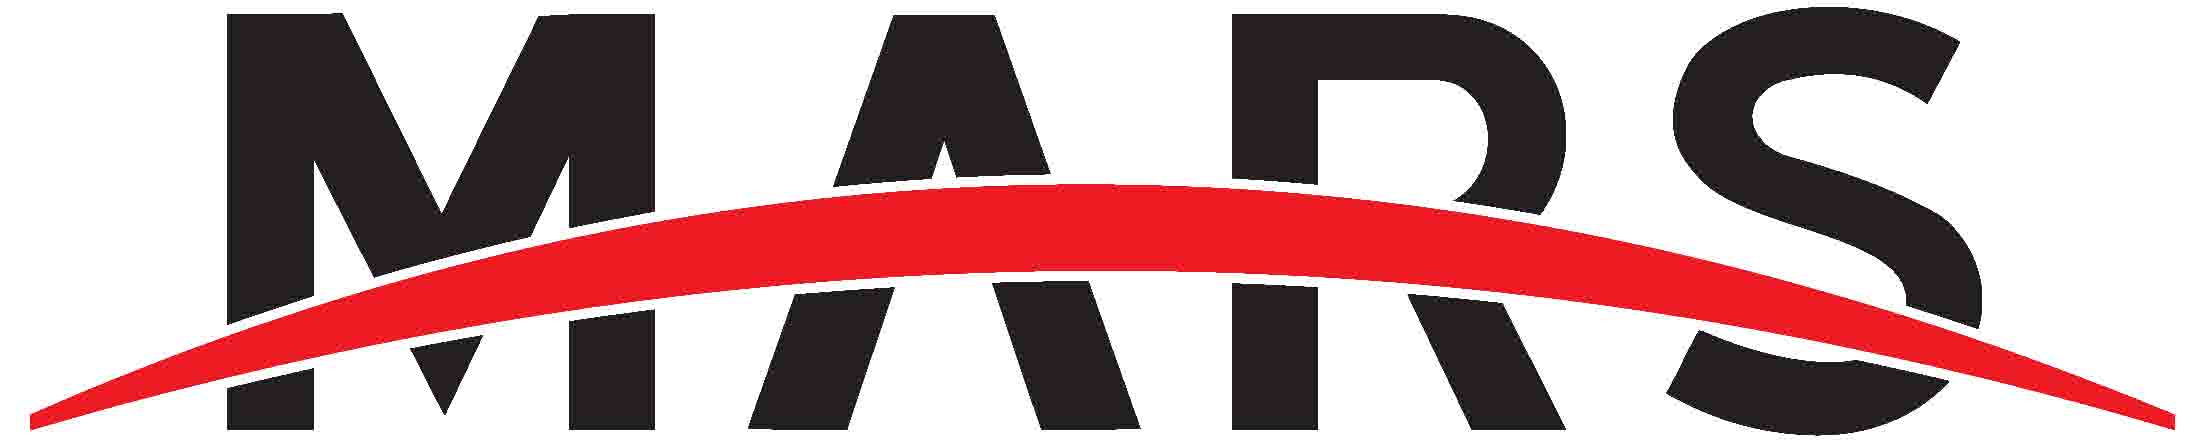 Mars-Gruppe logo